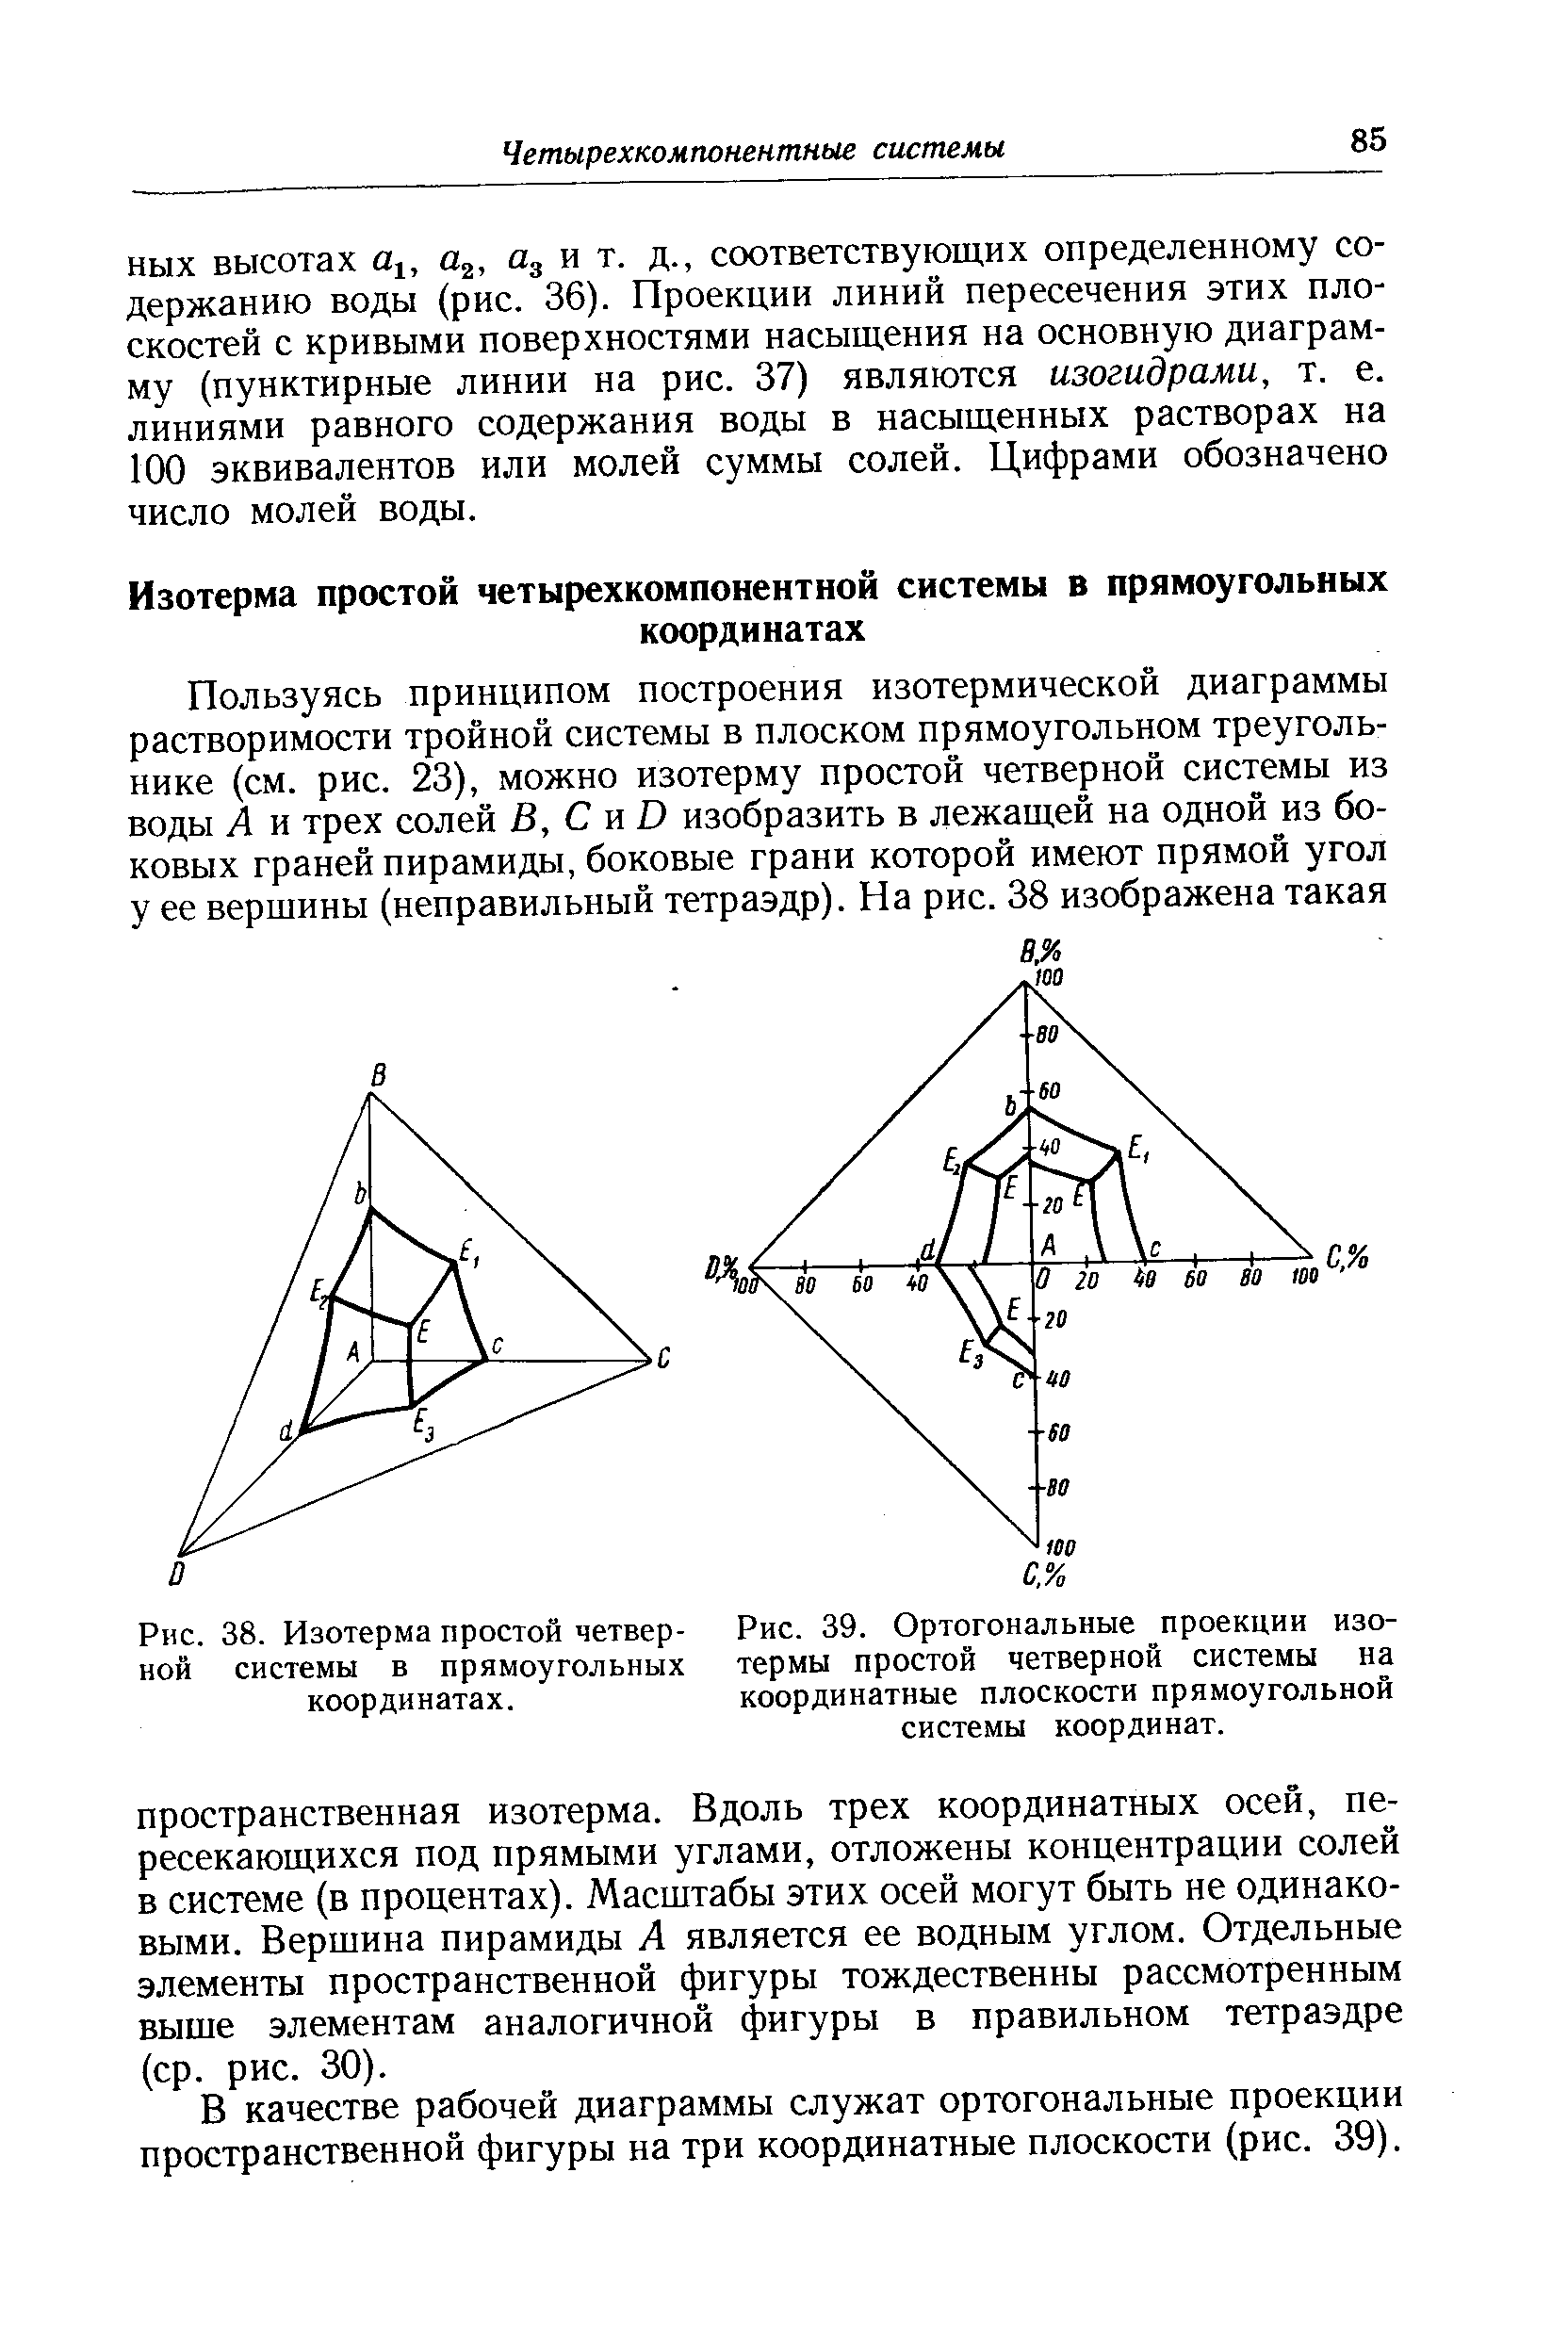 В качестве рабочей диаграммы служат ортогональные проекции пространственной фигуры на три координатные плоскости (рис. 39).